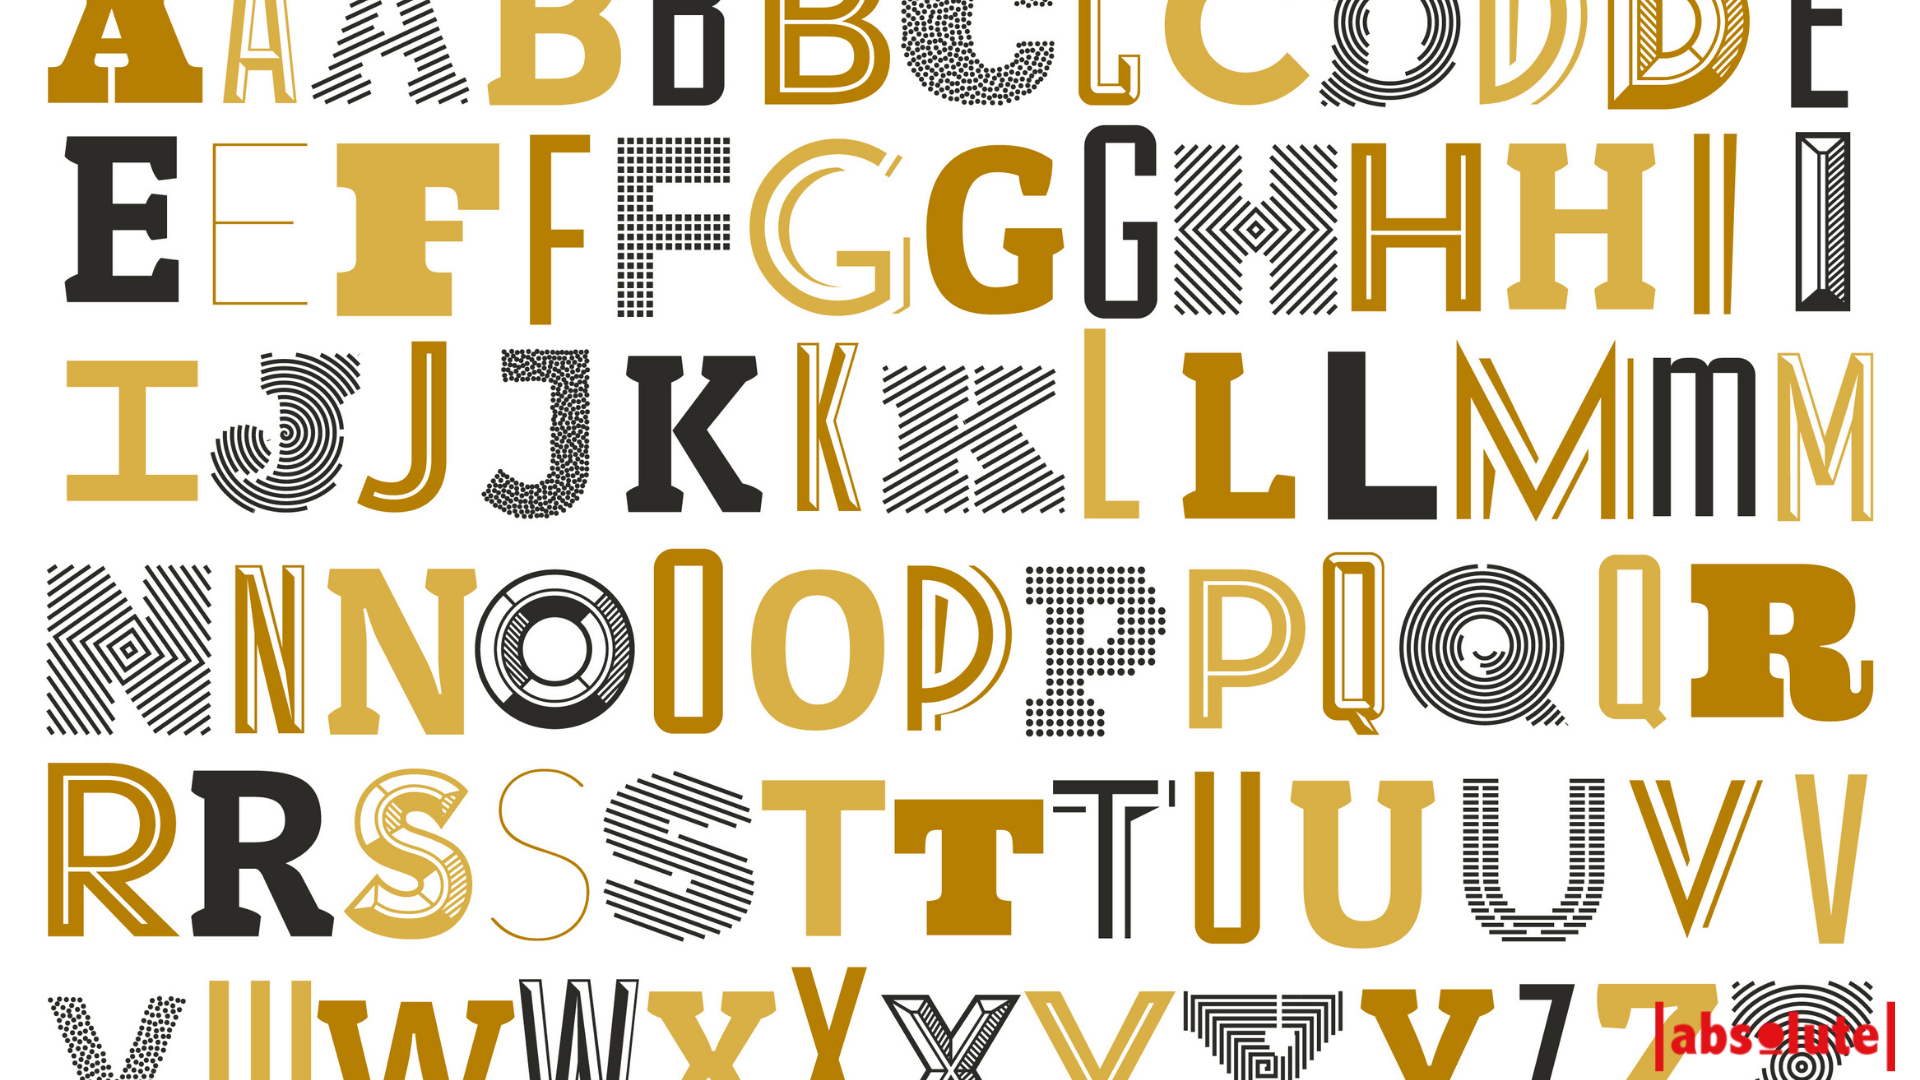 Utiliza la tipografía para expresar la personalidad de tu marca